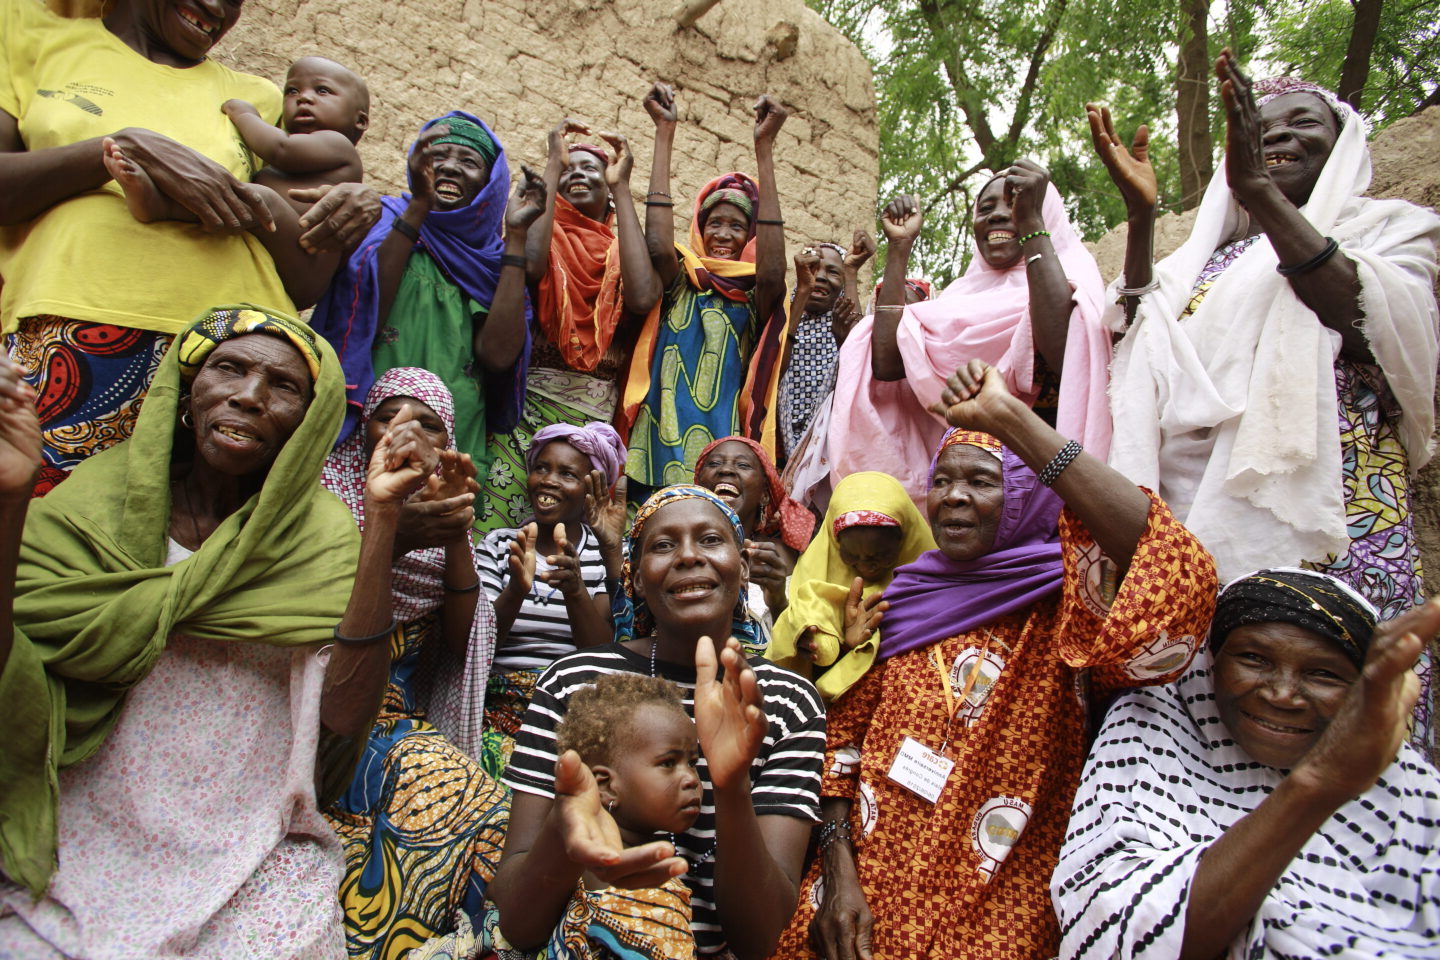 L'association CARE aide les femmes à sortir de la pauvreté dans le monde, comme ici au Niger